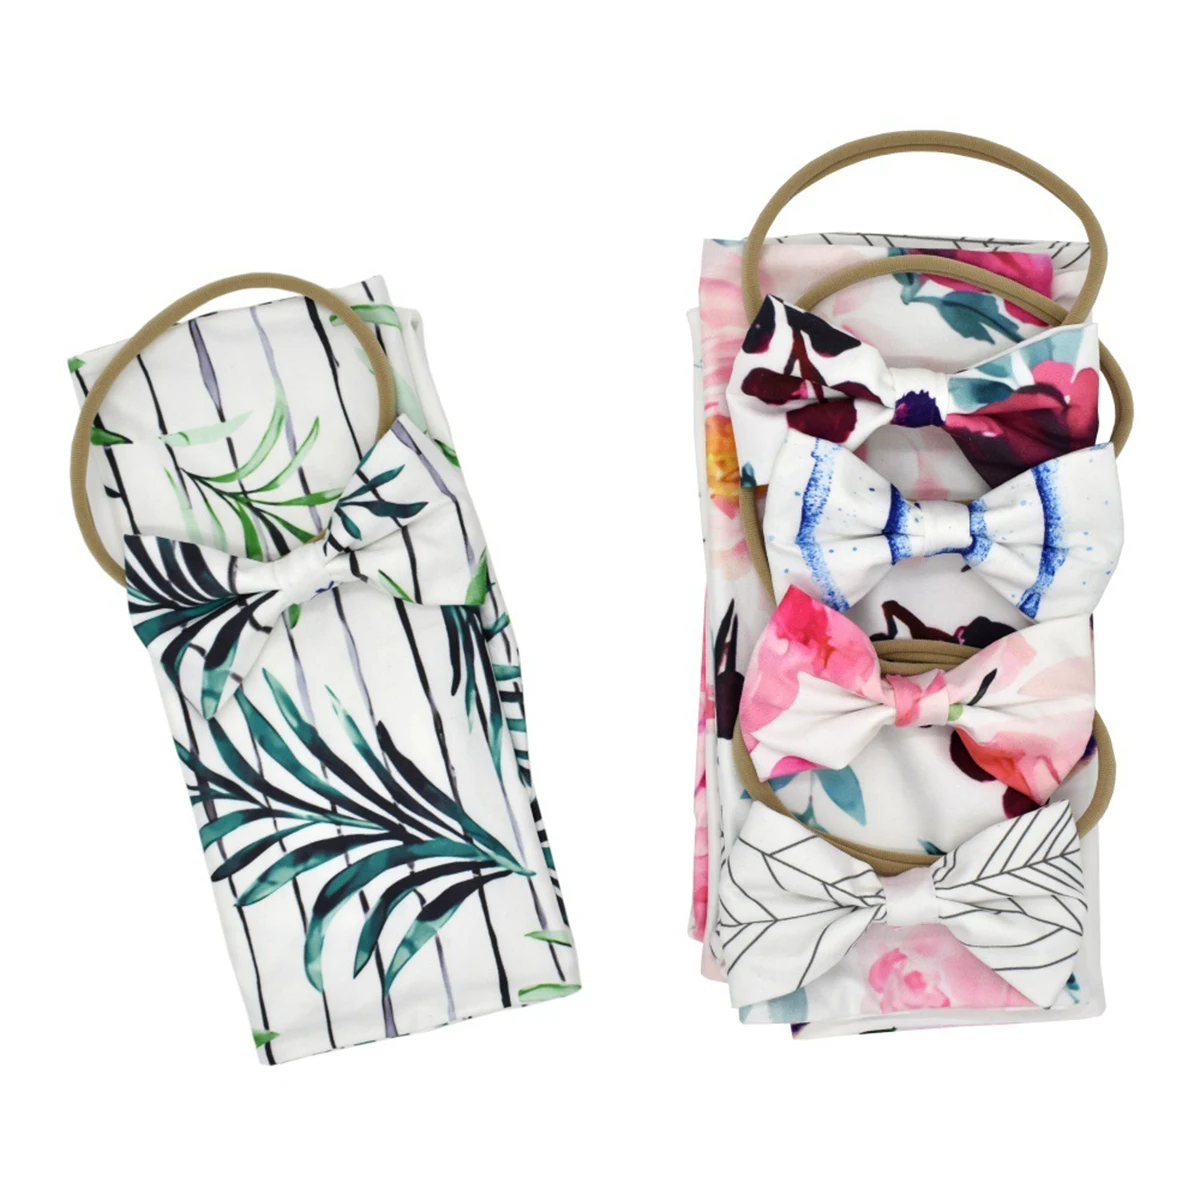 Горячая Распродажа 2019 для новорожденных спальный комплект для младенца забавные пеленки Одеяло пеленка для сна + повязка на голову, 2 шт